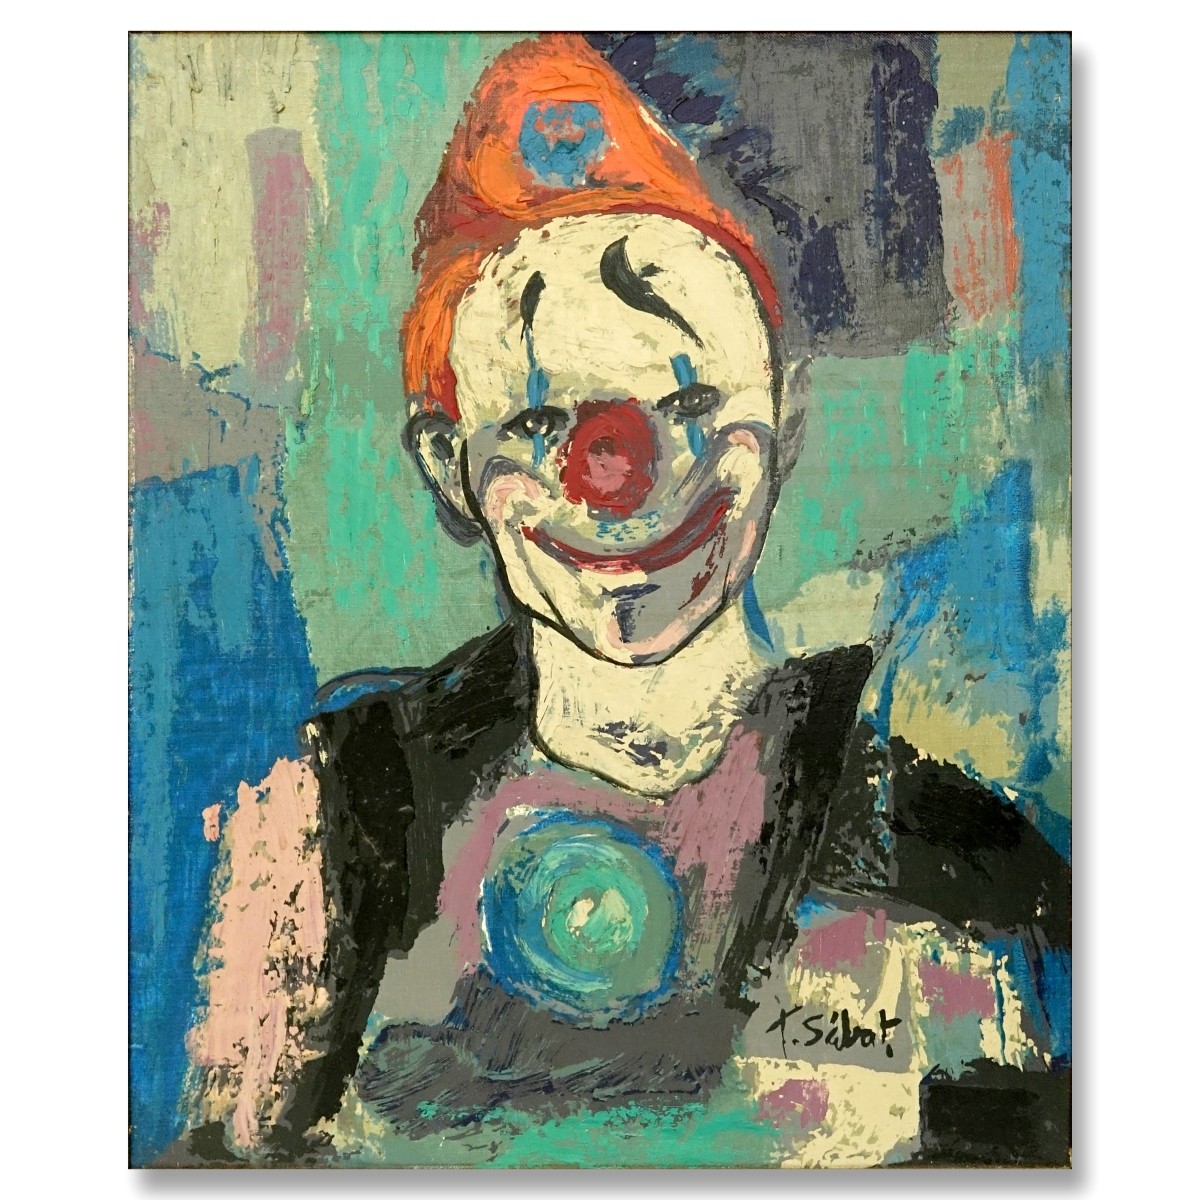 T. Sabat Oil on canvas, Portrait of a Clown